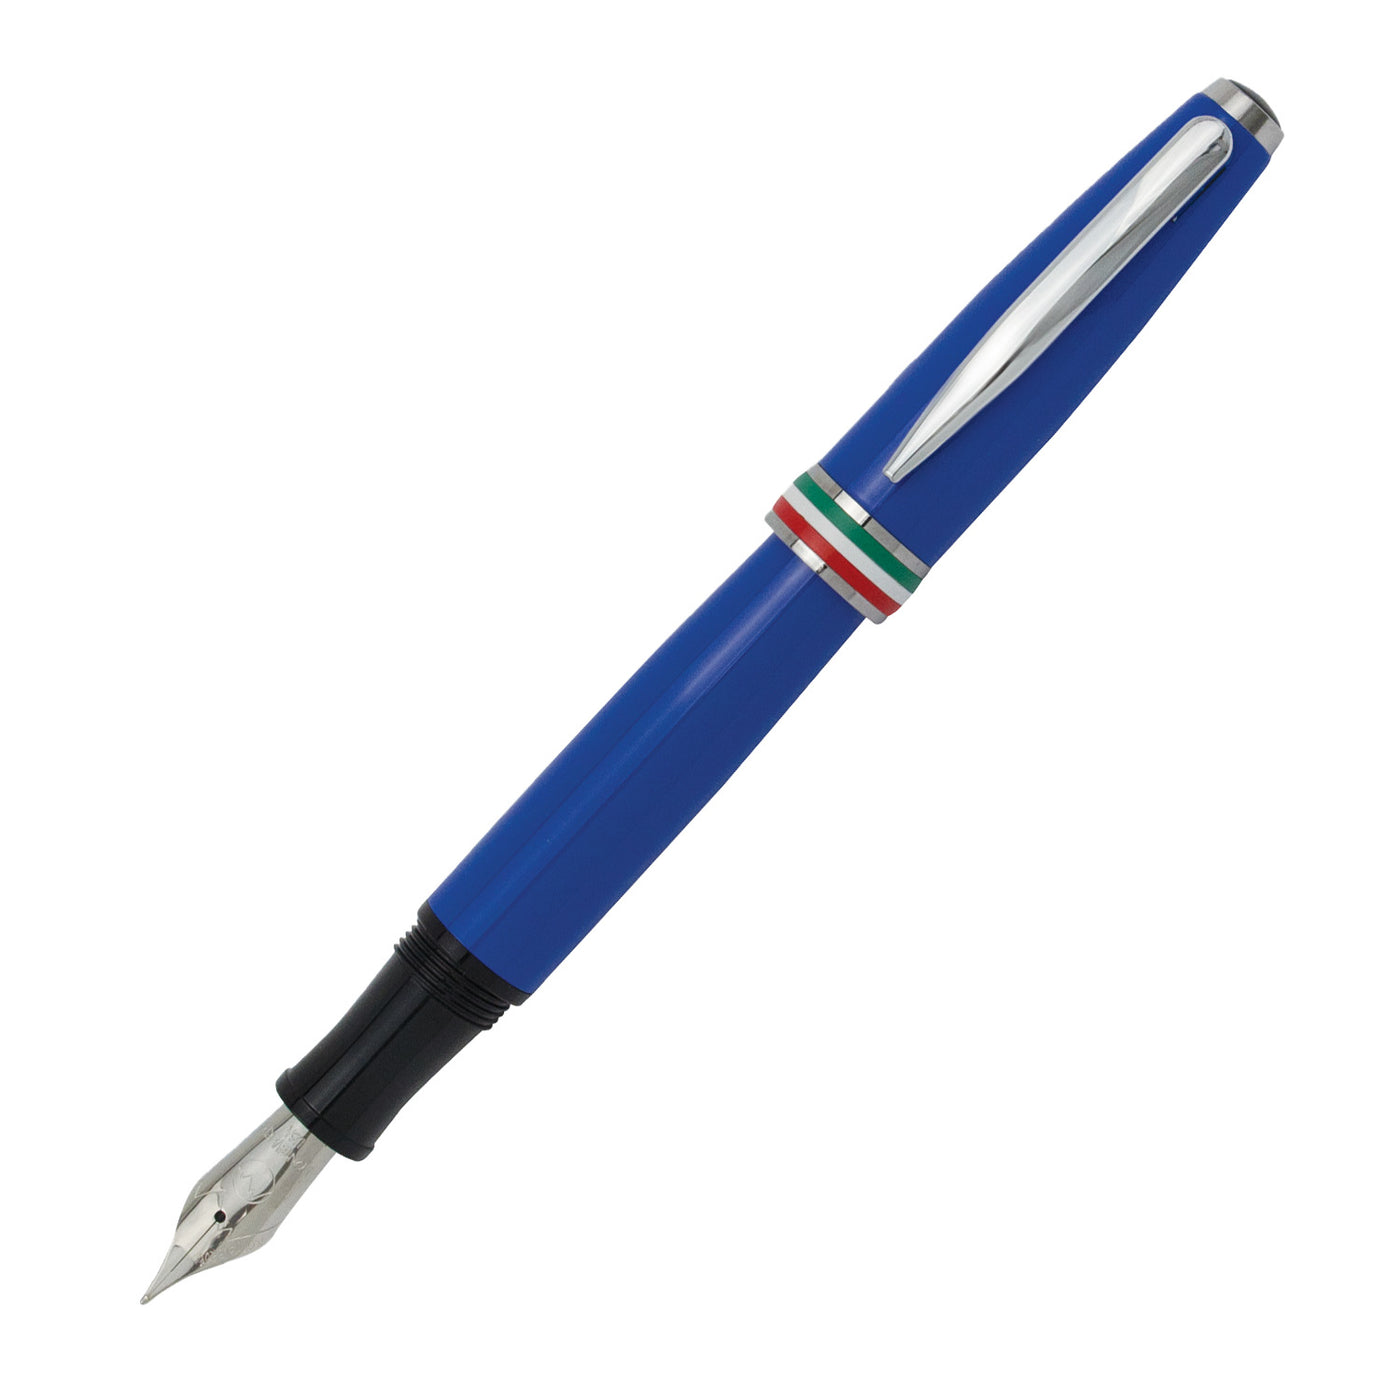 Monteverde Aldo Domani Italia Fountain Pen - Exotic Blue CT 2